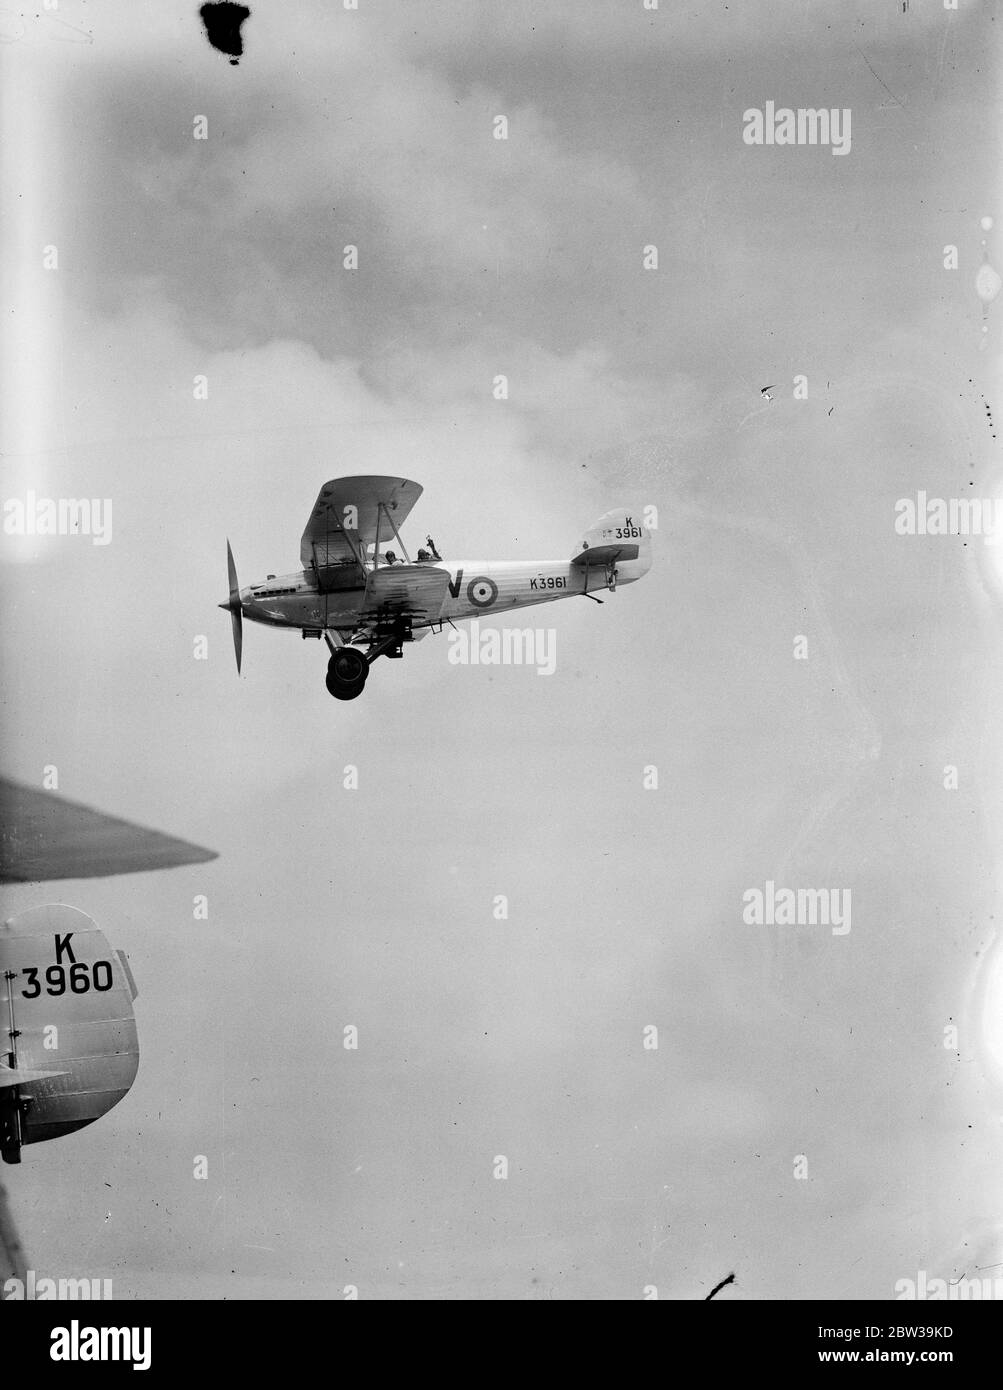 Les escadrons aériens combattent des batailles imitant au-dessus de l'Angleterre . Ouverture de la semaine de la défense aérienne . Machines du n° 15 Escadron ( Hawker Hart Bombers ) manœuvrant pour la position de bombarder leur objectif pendant l'invasion aérienne de l'Angleterre . 22 juillet 1935 Banque D'Images